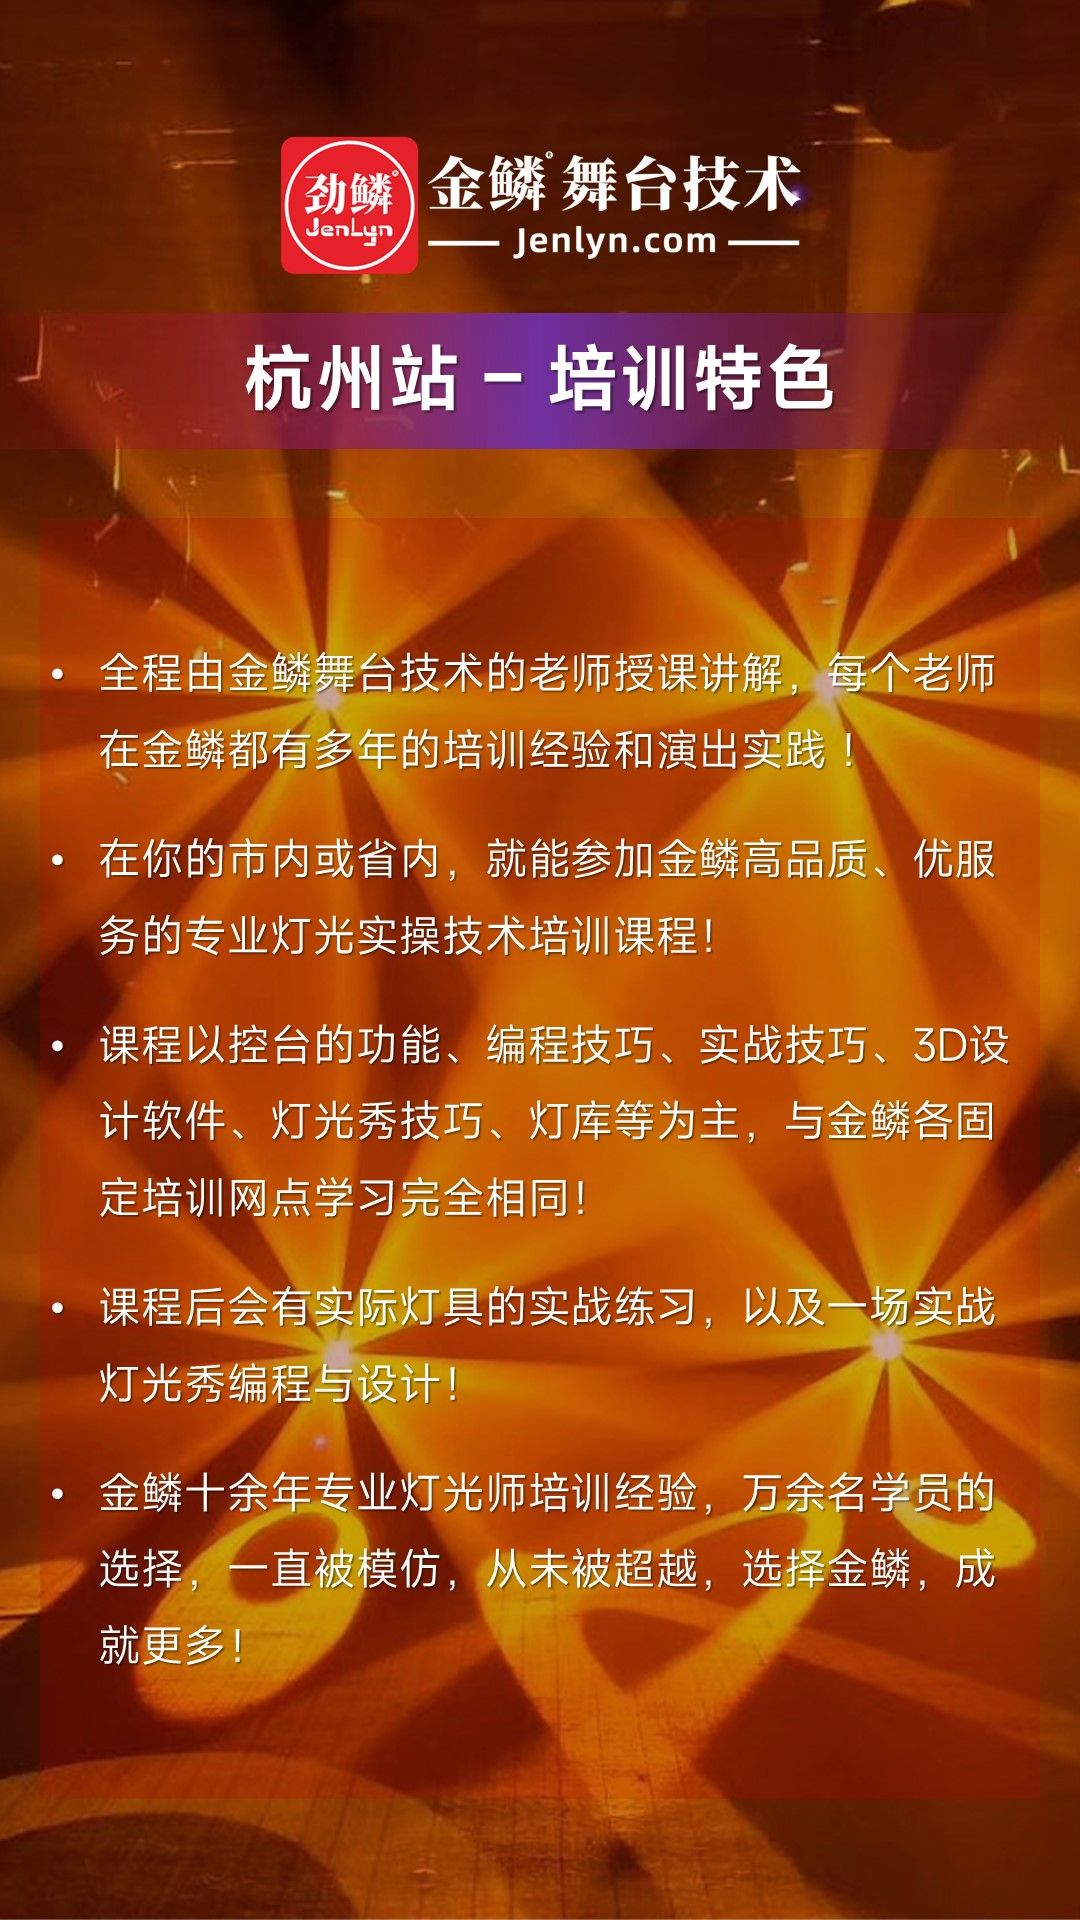 2023年8月金鳞舞台技术“杭州站”灯光师培训班再次启动[...